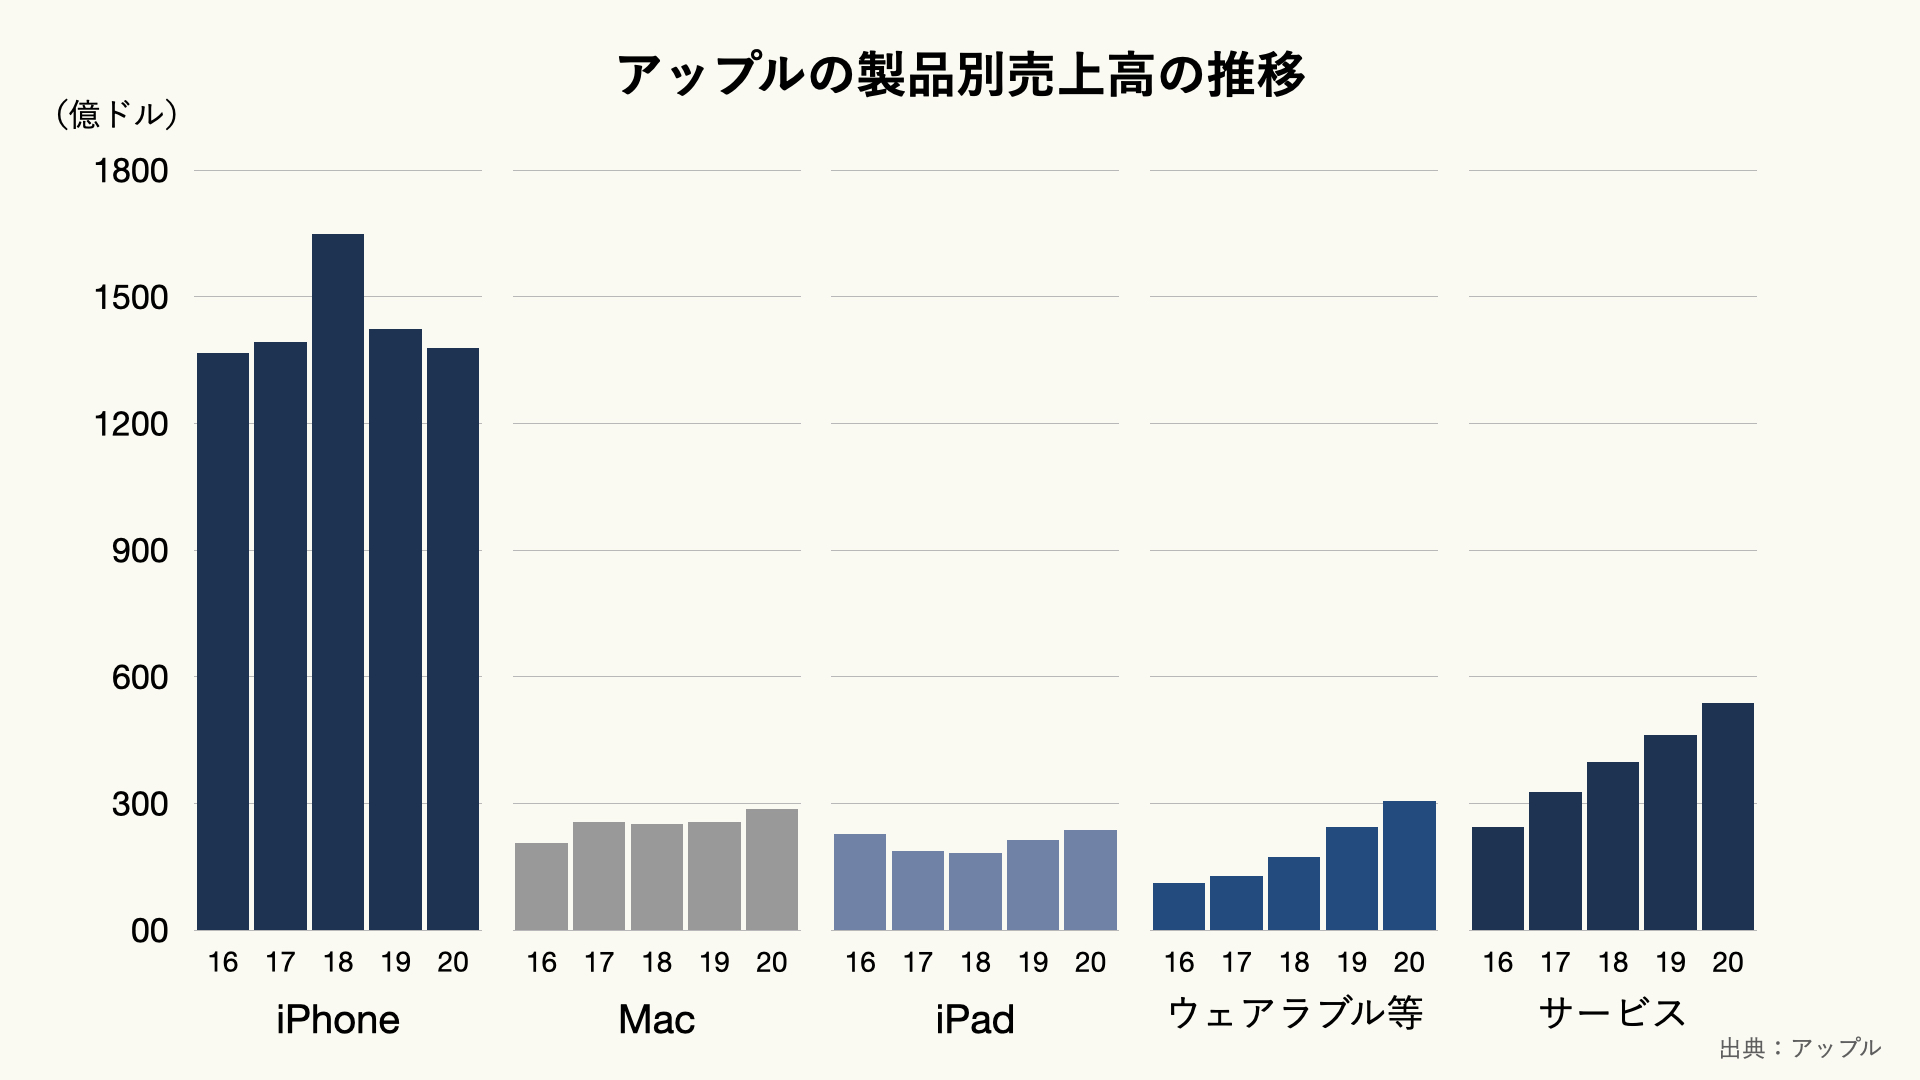 アップルの製品別売上高の推移（クリーム）